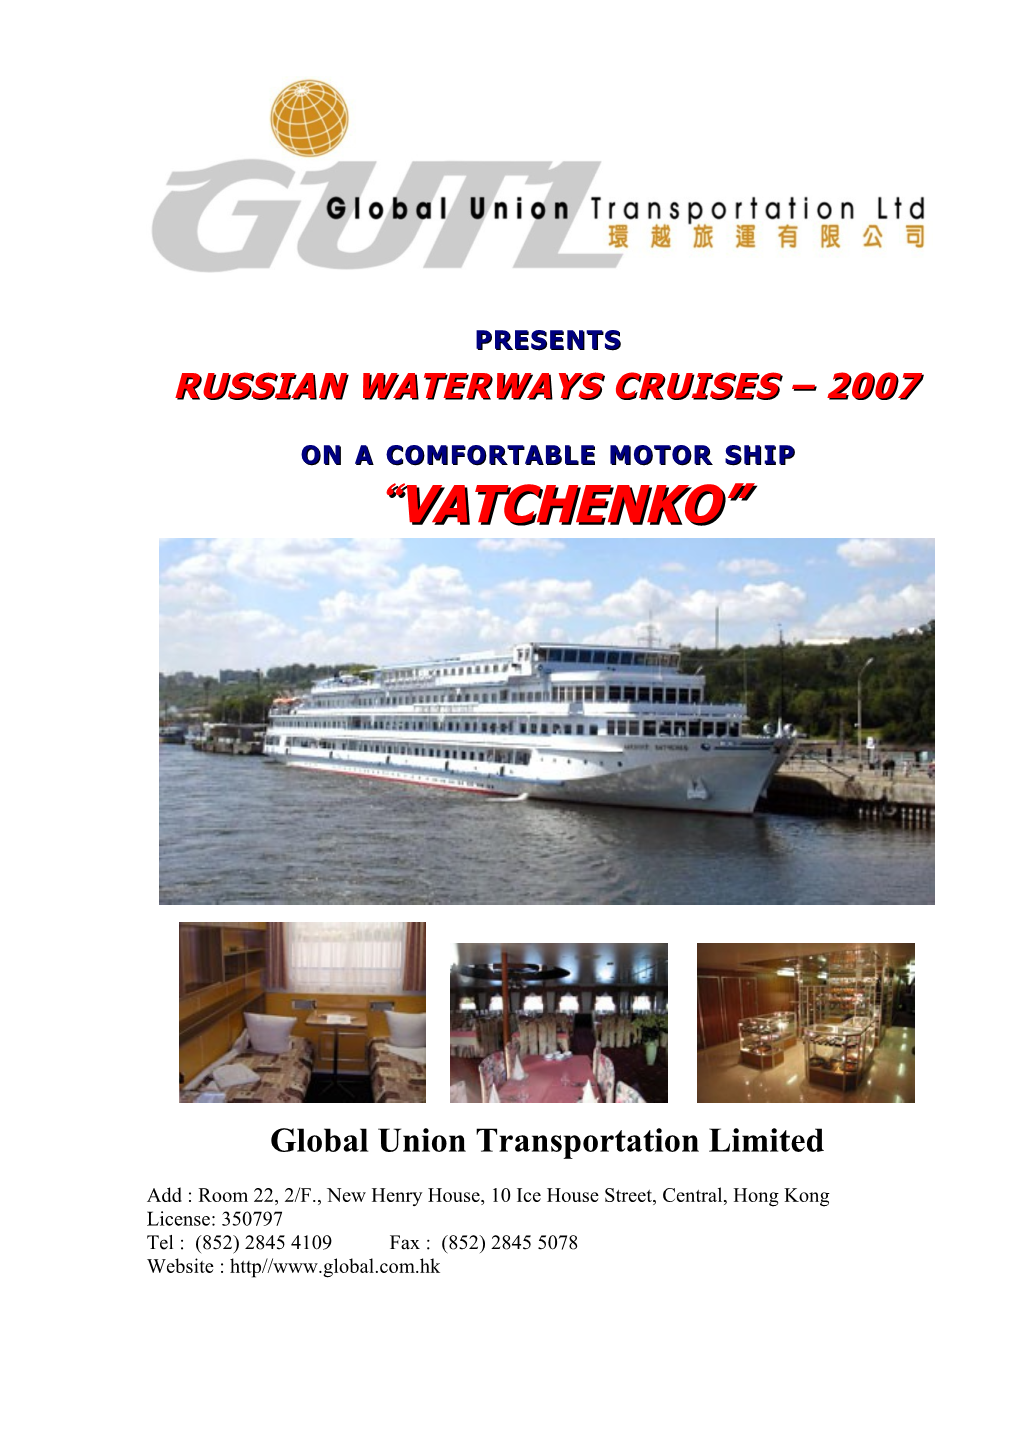 Russian Waterways Cruises 2007